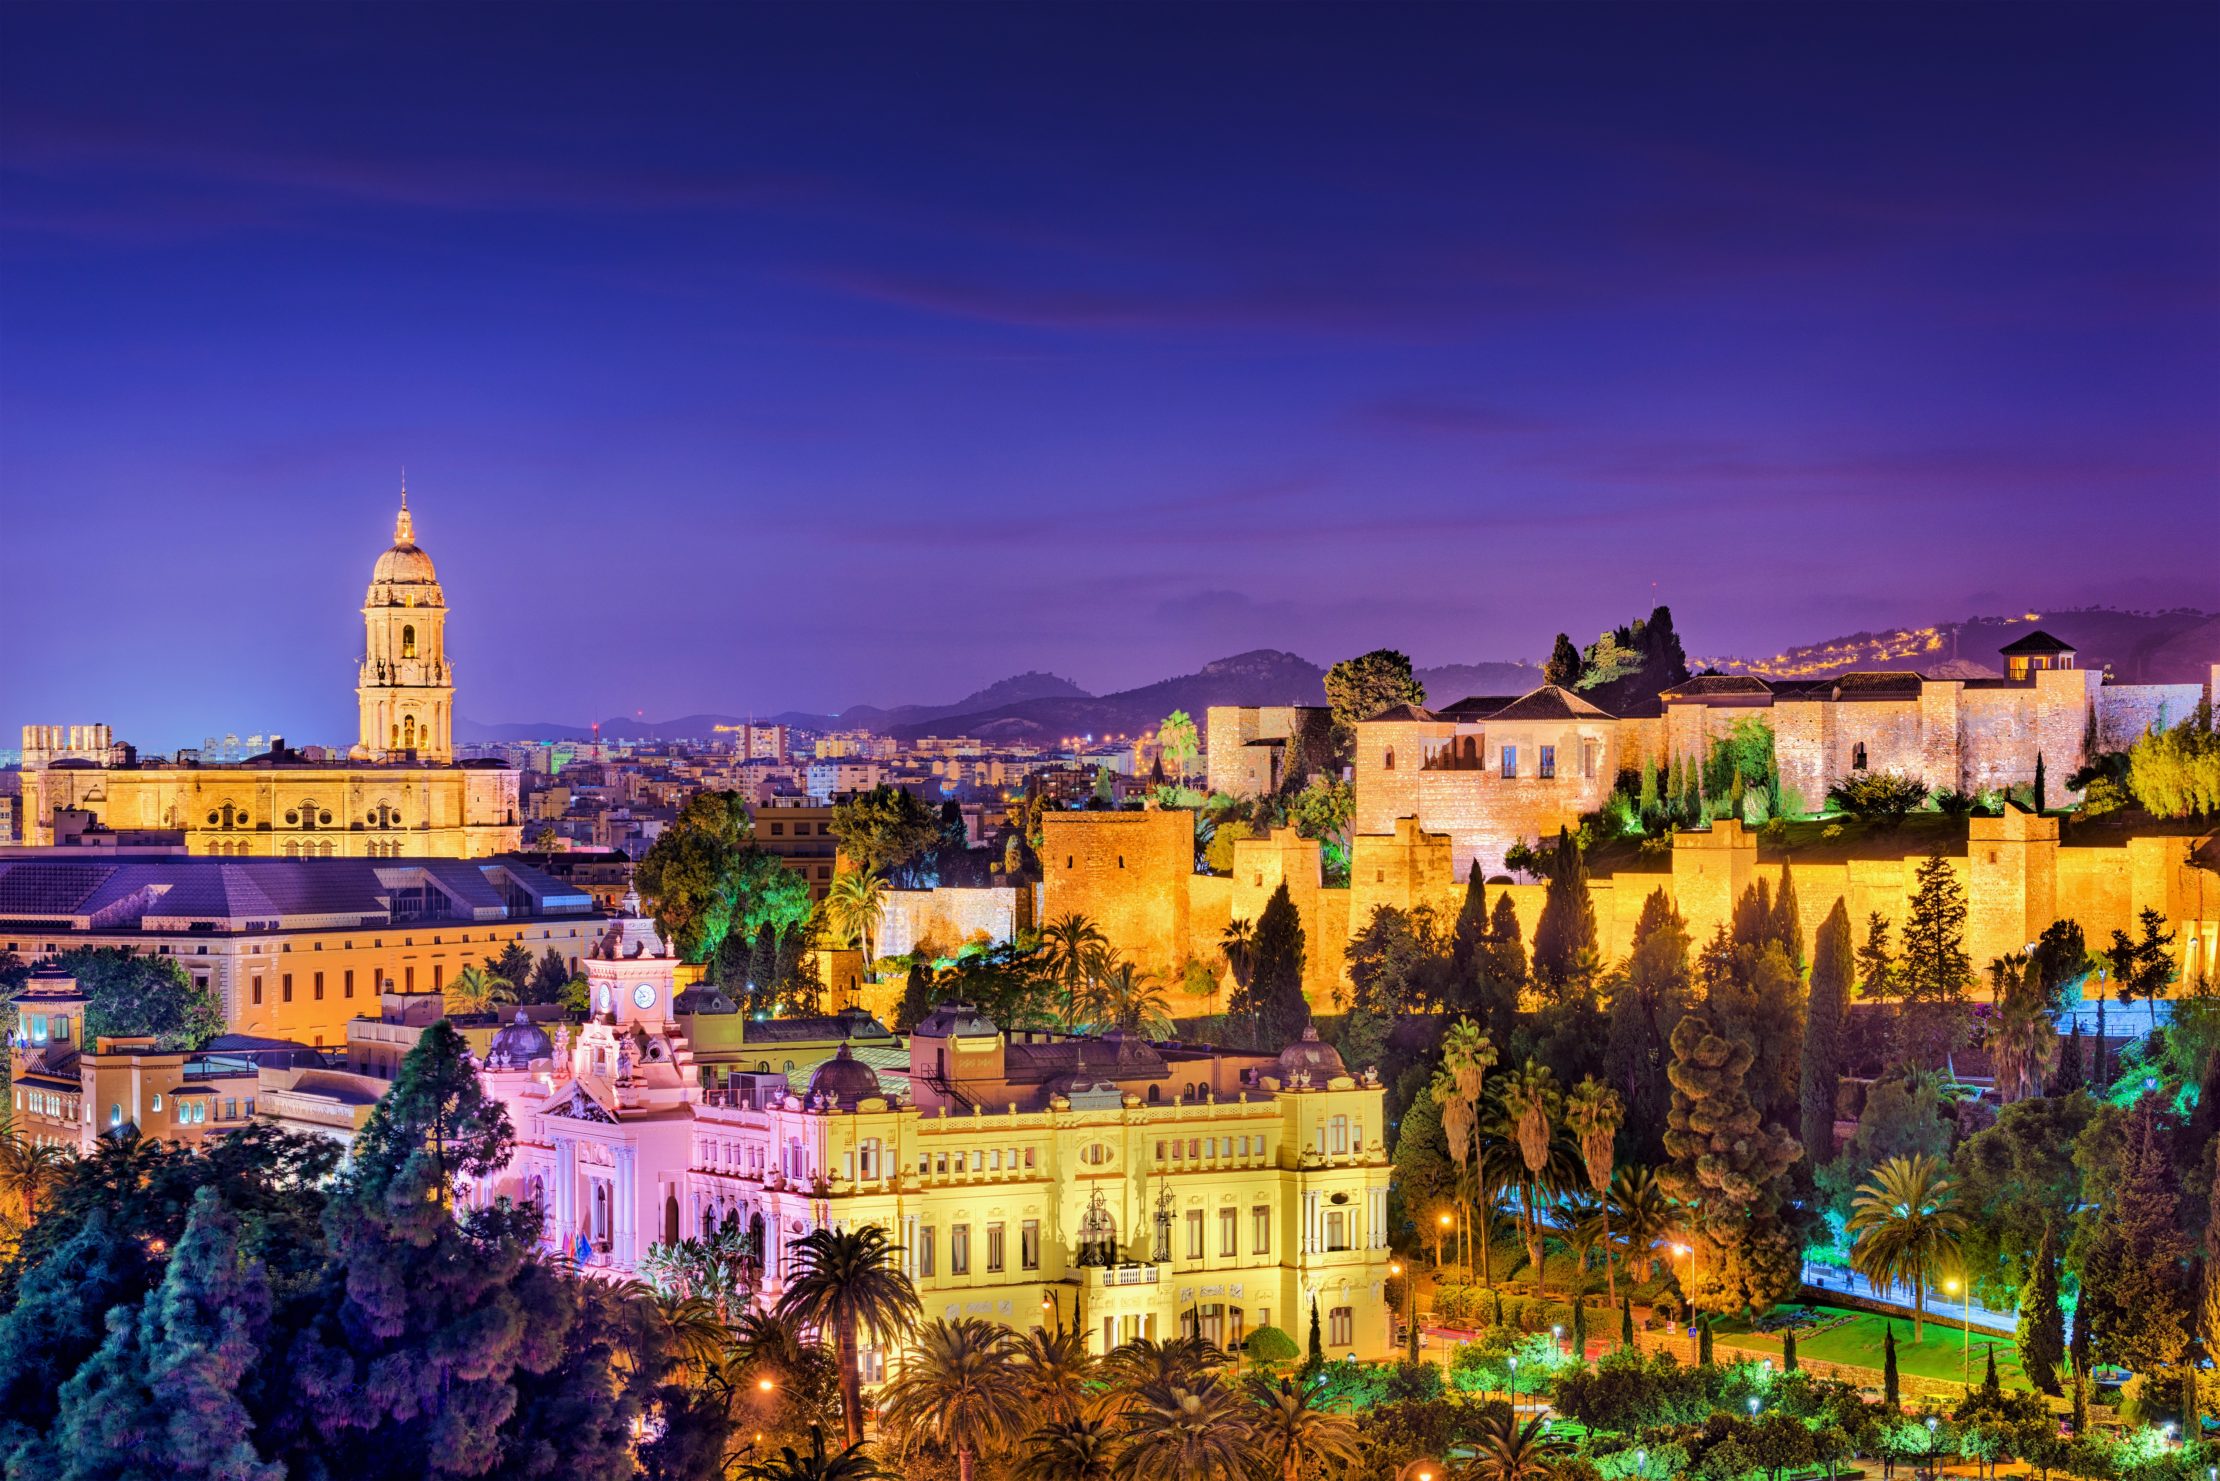 Vista de Malaga, preciosa desde todos los puntos de vista